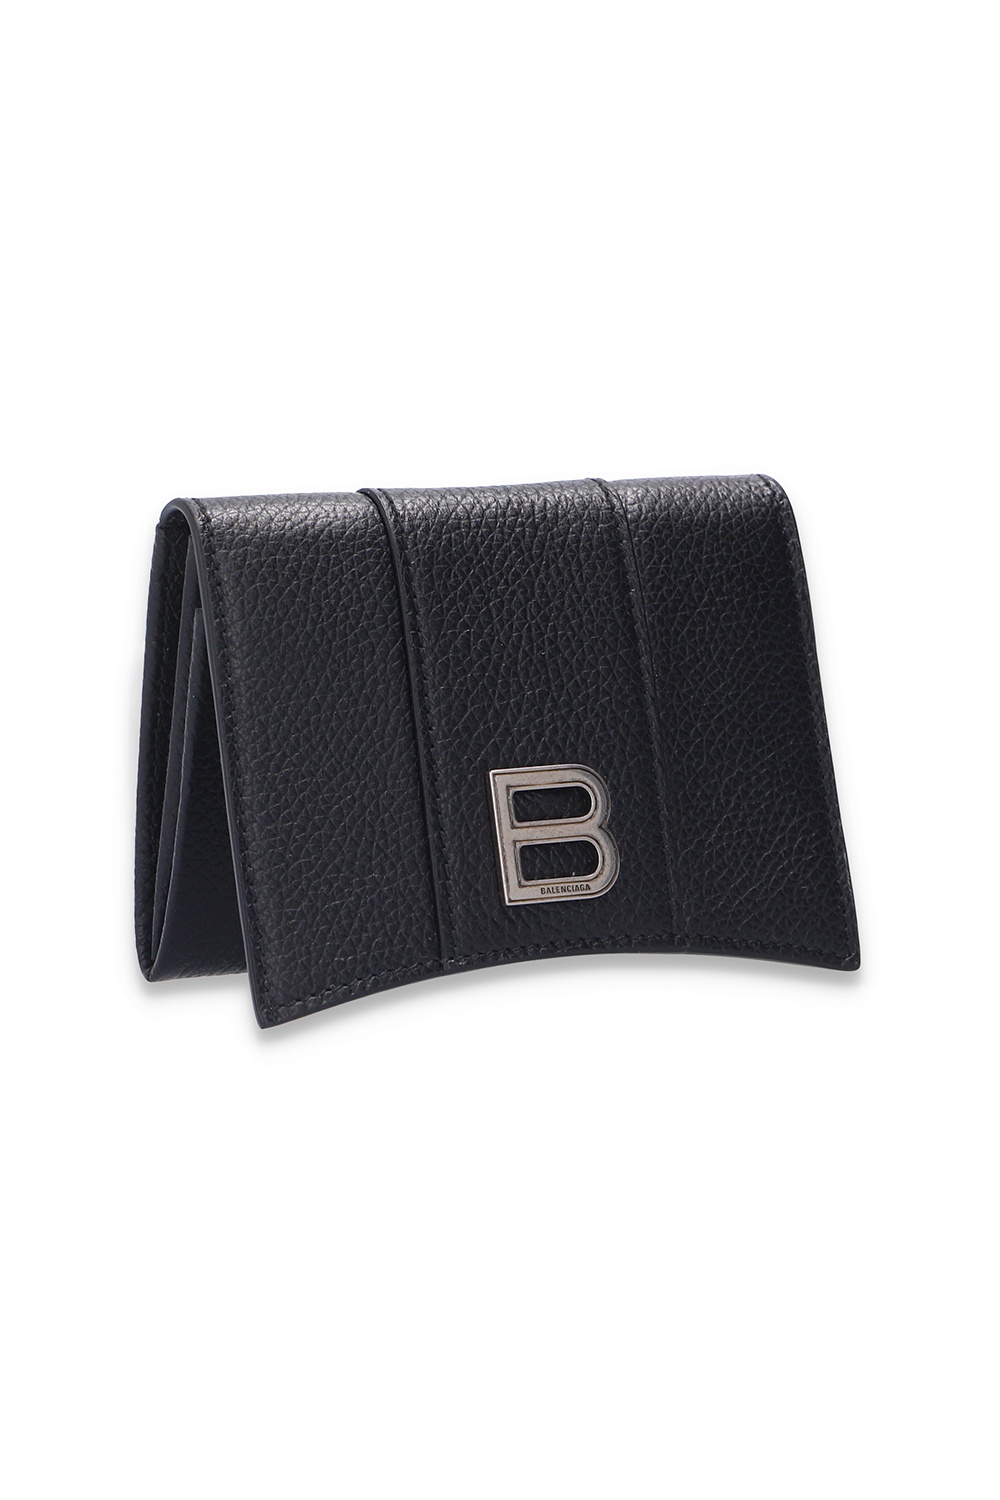 Balenciaga Folding card case